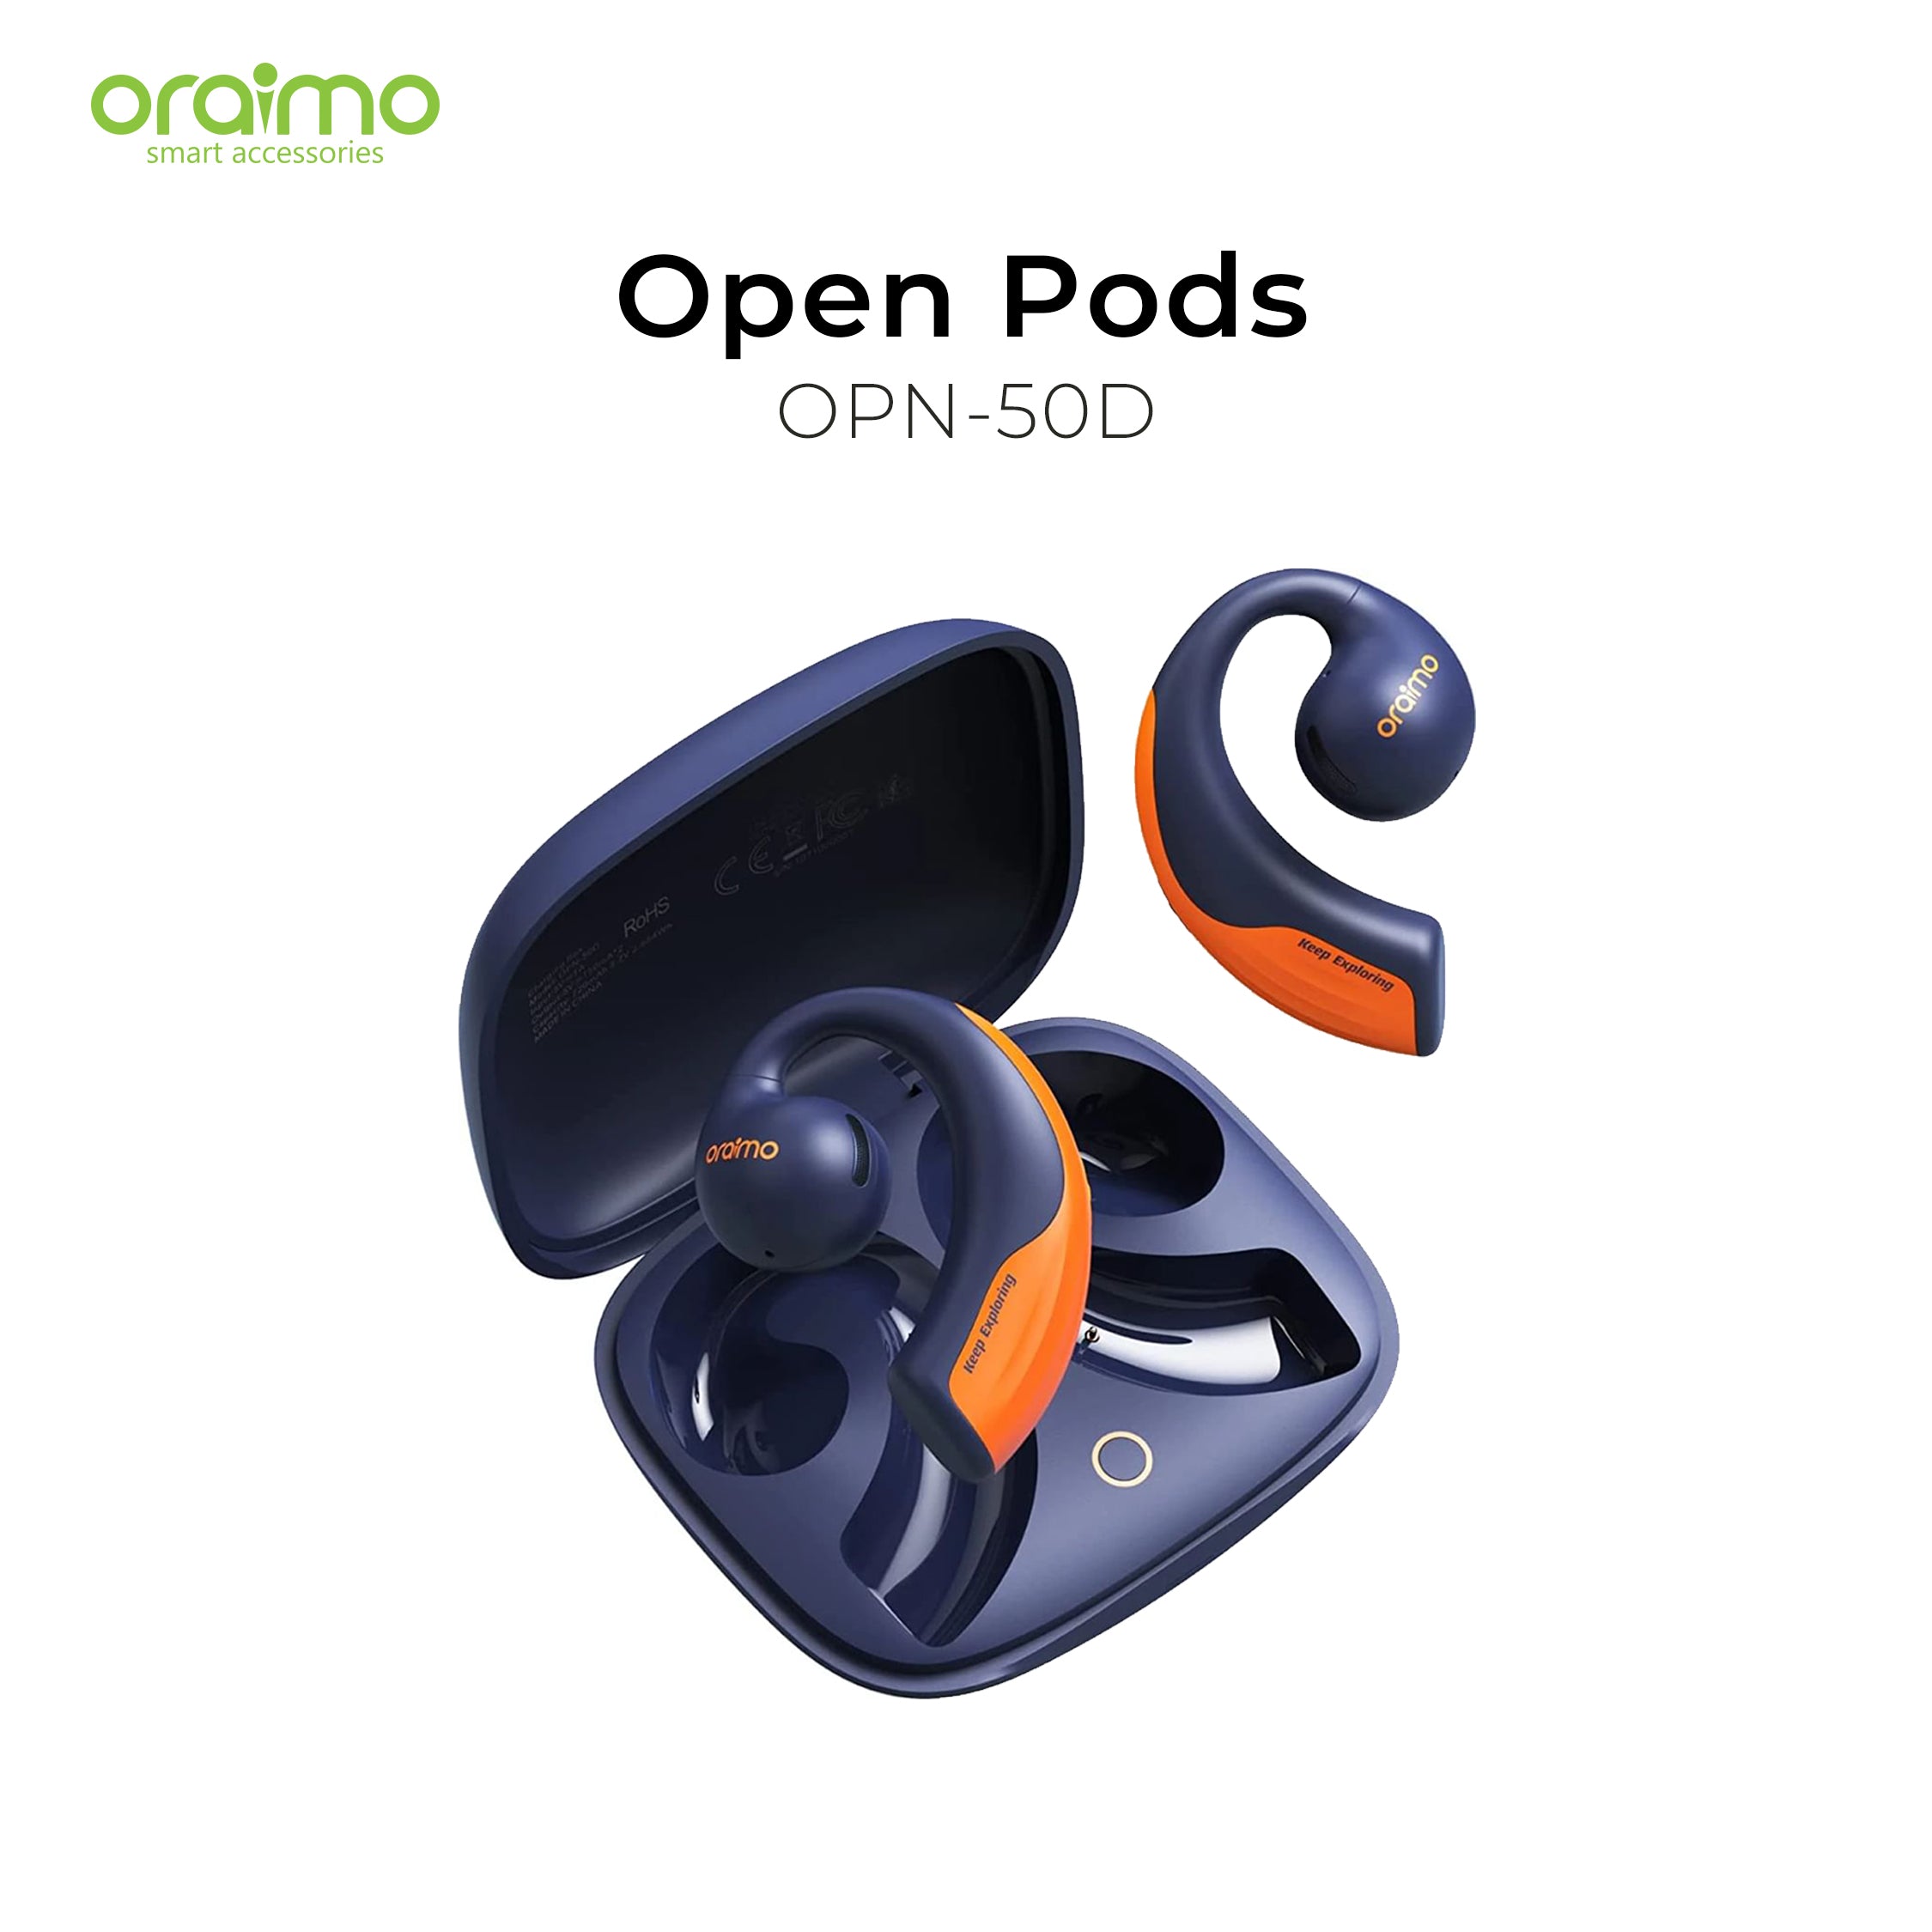 Oraimo Open Pods OPN-50D